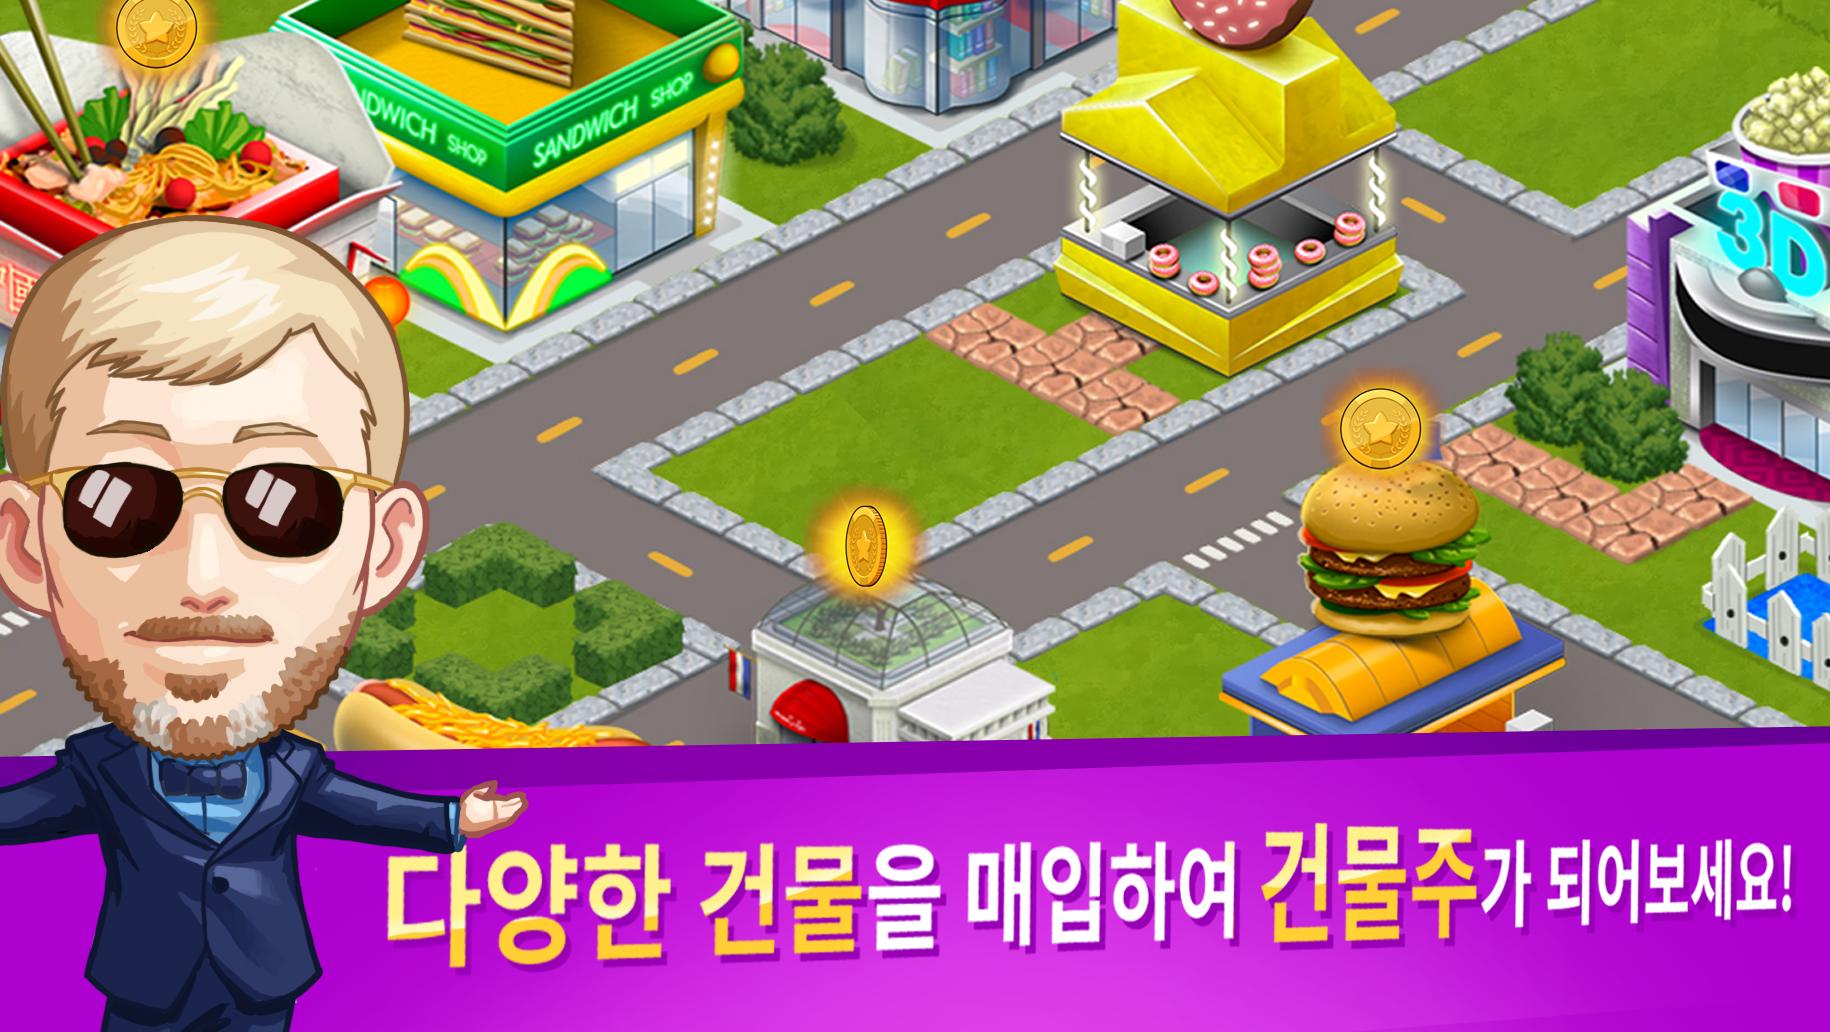 게임오브에셋 경제시뮬레이션 게임 (주식, 부동산, 펀드)